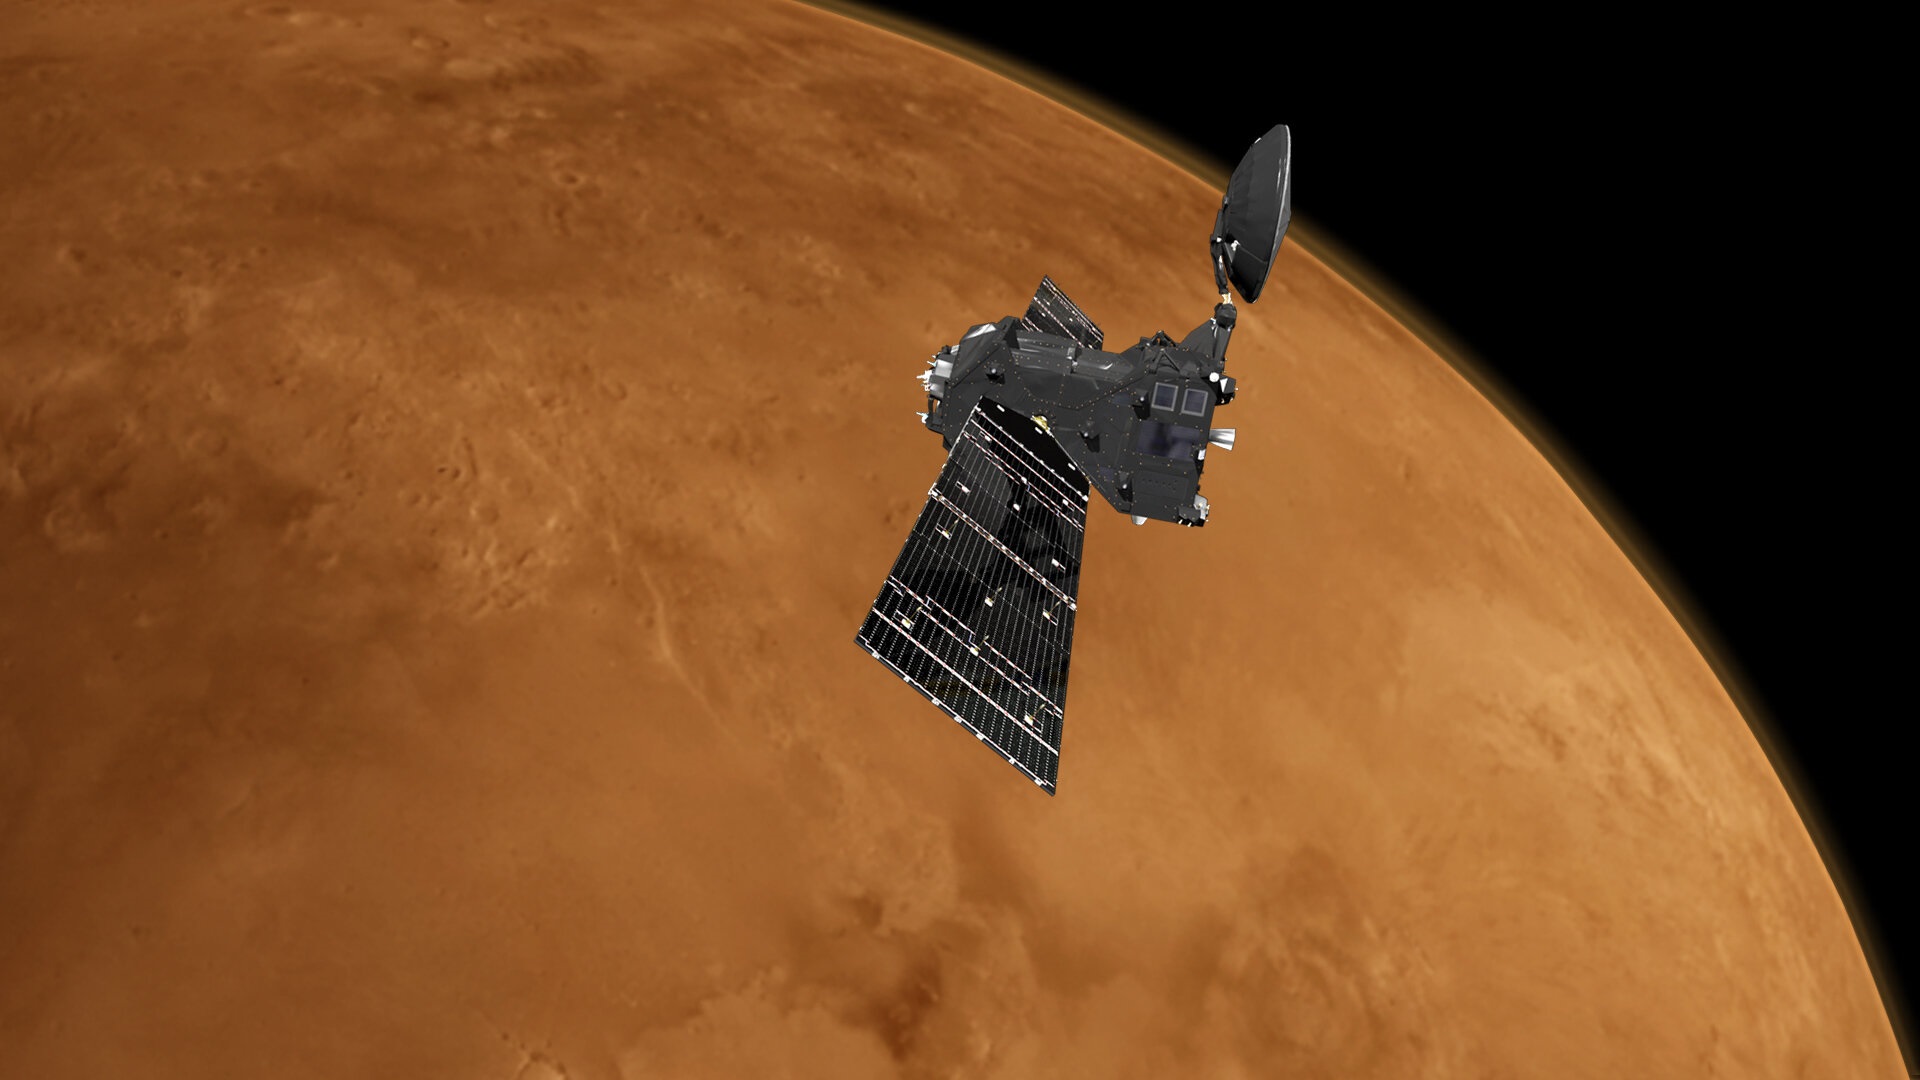 El orbitador TGO realizó el descubrimientop (ESA)
